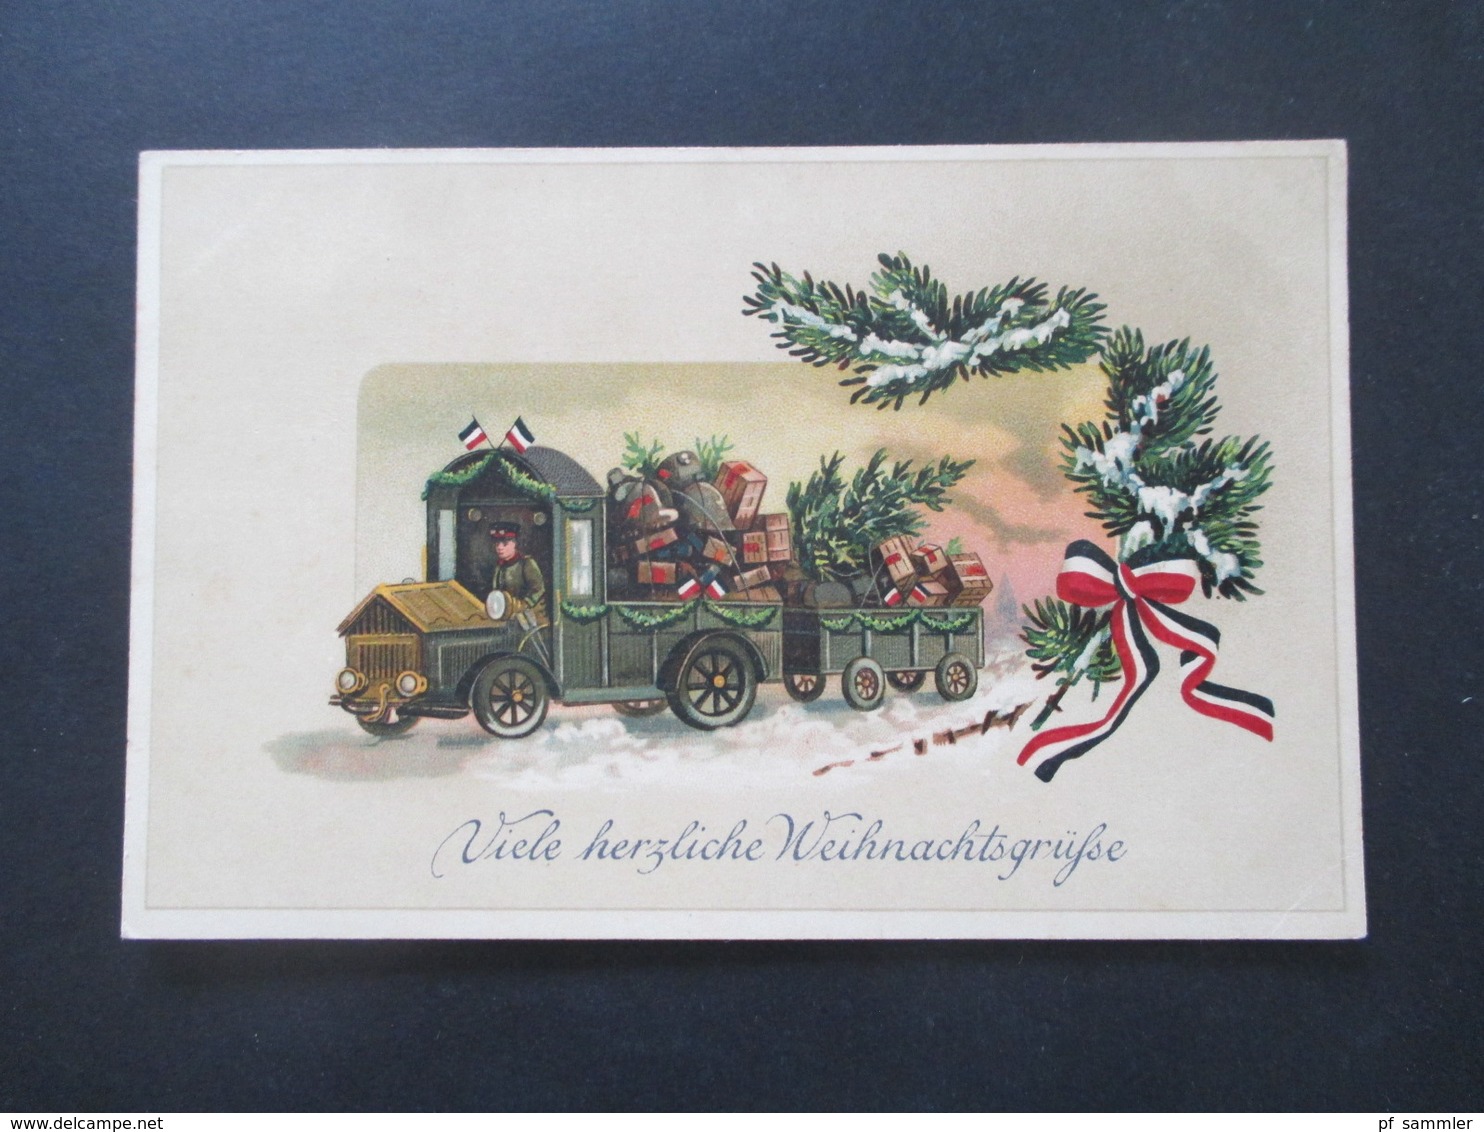 AK Konvolut 24 Stück Thematik Motive Weihnachten / Kerze / Tannenzweig 1930 / 40er Jahre fast alle echt gelaufen!